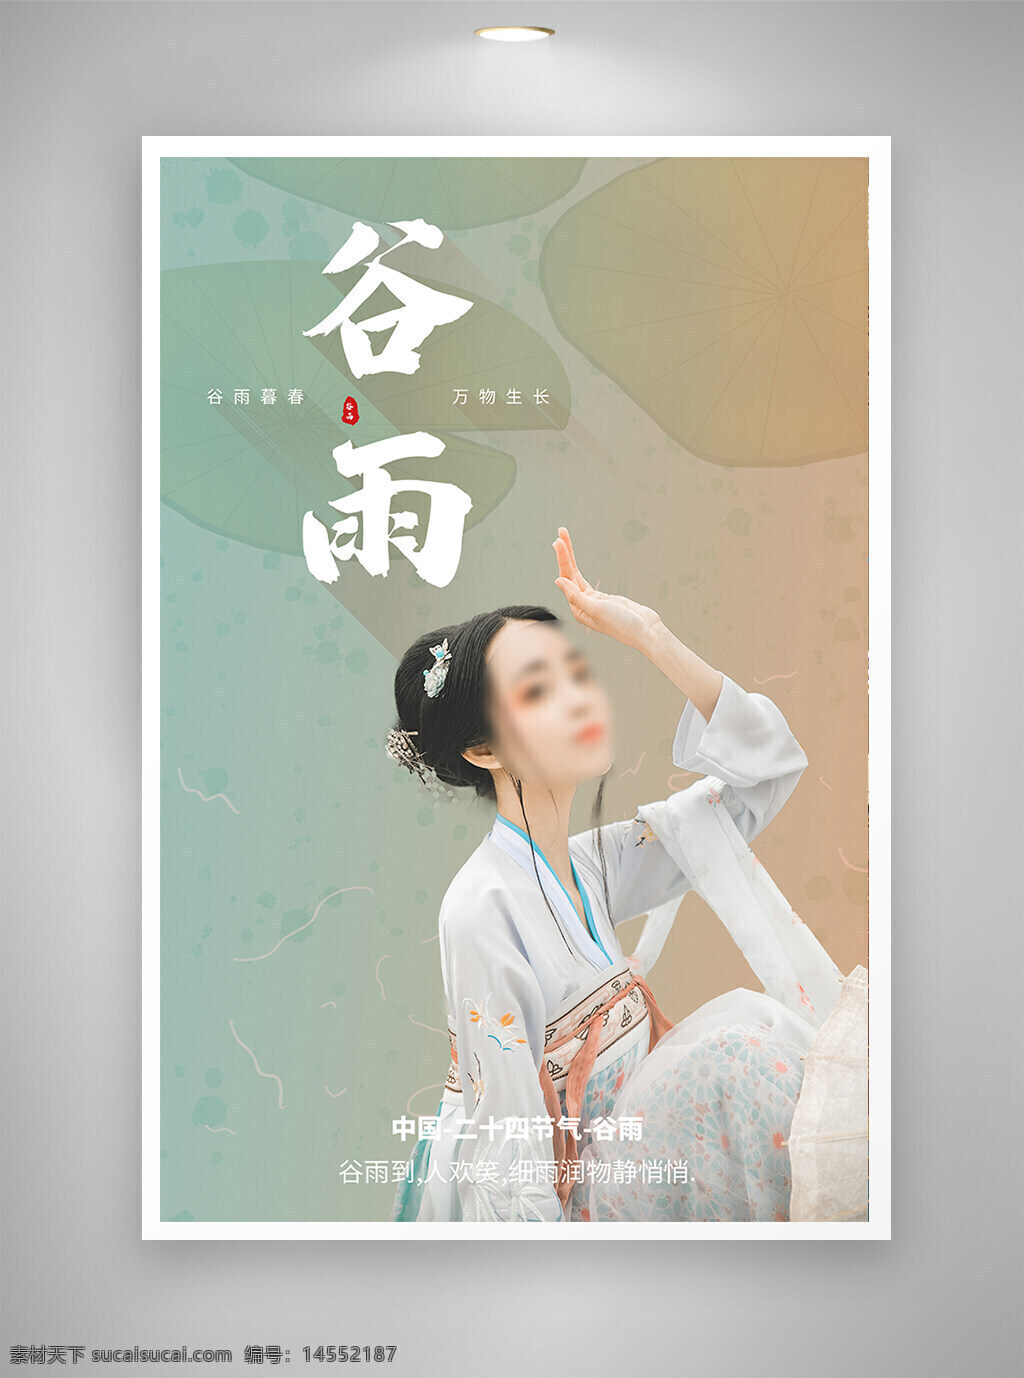 中国风海报 促销海报 节日海报 古风海报 谷雨海报